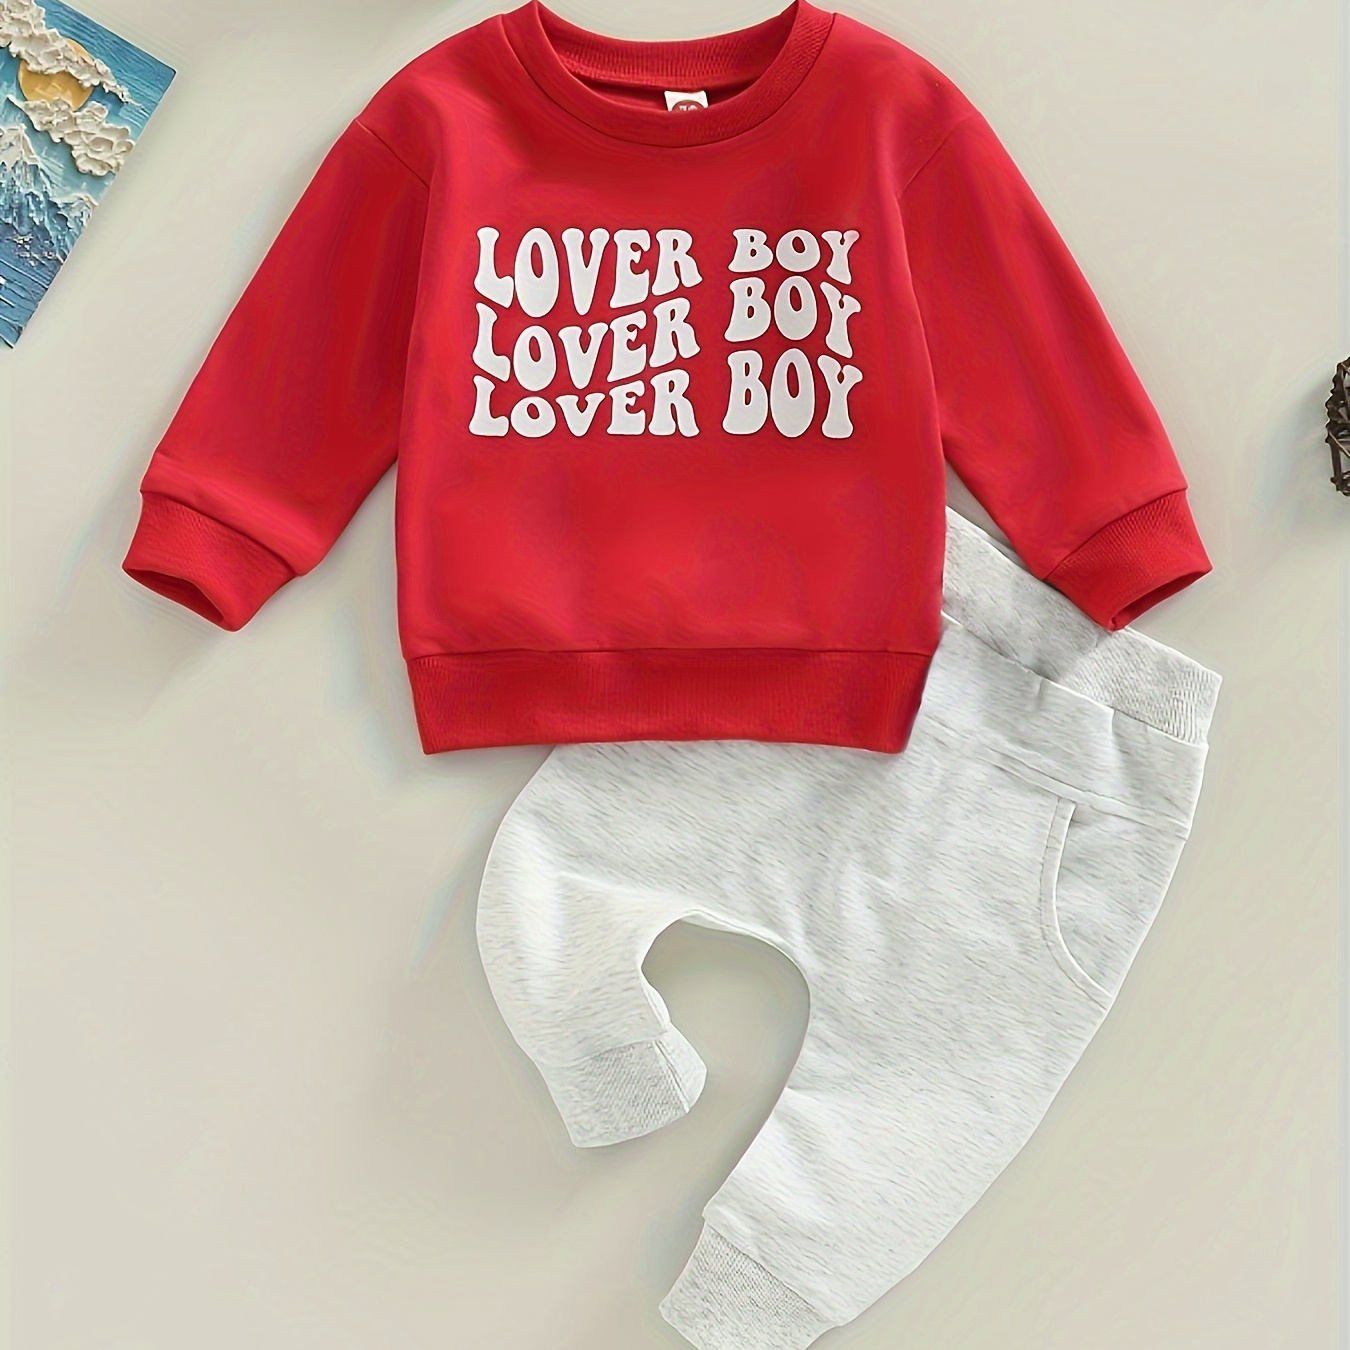 

2pcs Ensemble Col Rond Imprimé "Lover Boy" Pour Bébé, Sweat-shirt Et Pantalon, Vêtements Pour Bébé Garçon, En Cadeau